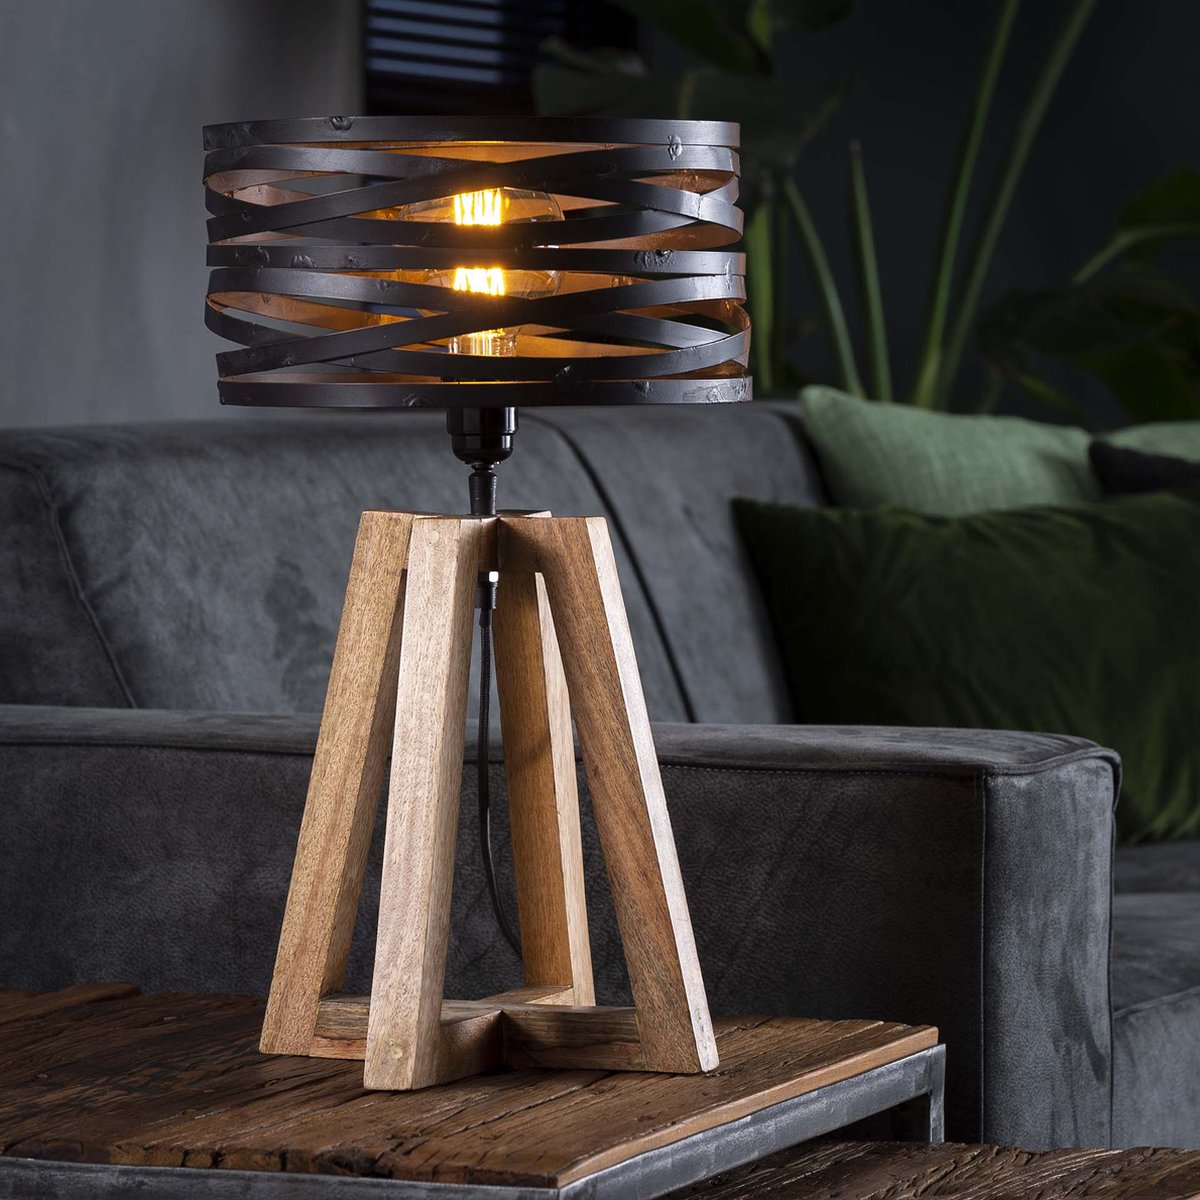 Landelijke tafellamp wikkel houten kruisframe | 1 lichts | bruin | metaal | 50 cm hoog | Ø 29 cm | modern / sfeervol design